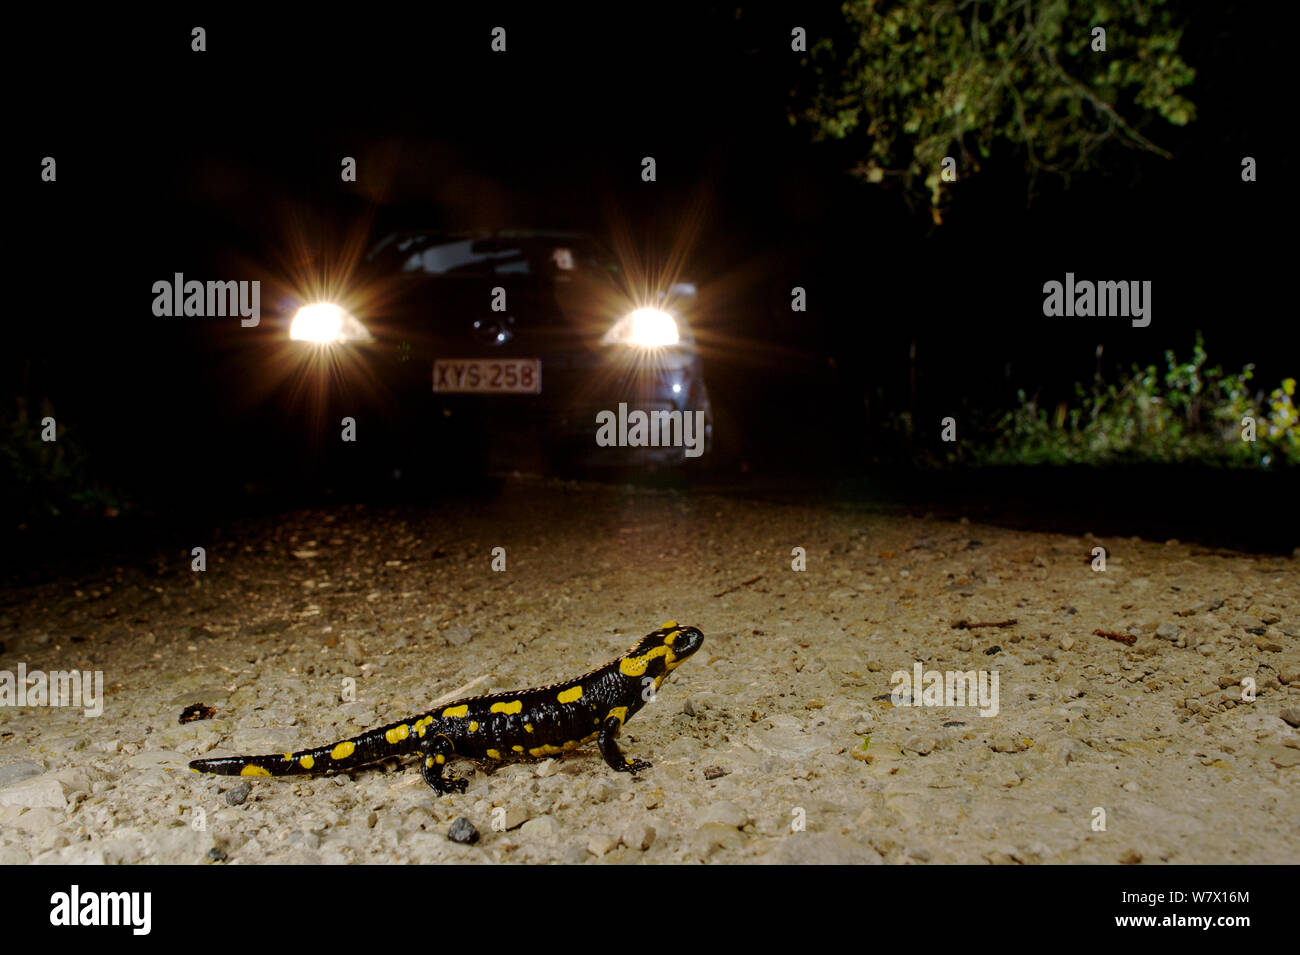 Salamandra pezzata (Salamandra salamandra) attraversando la strada con la vettura si avvicina. La Francia. Novembre 2012 Foto Stock